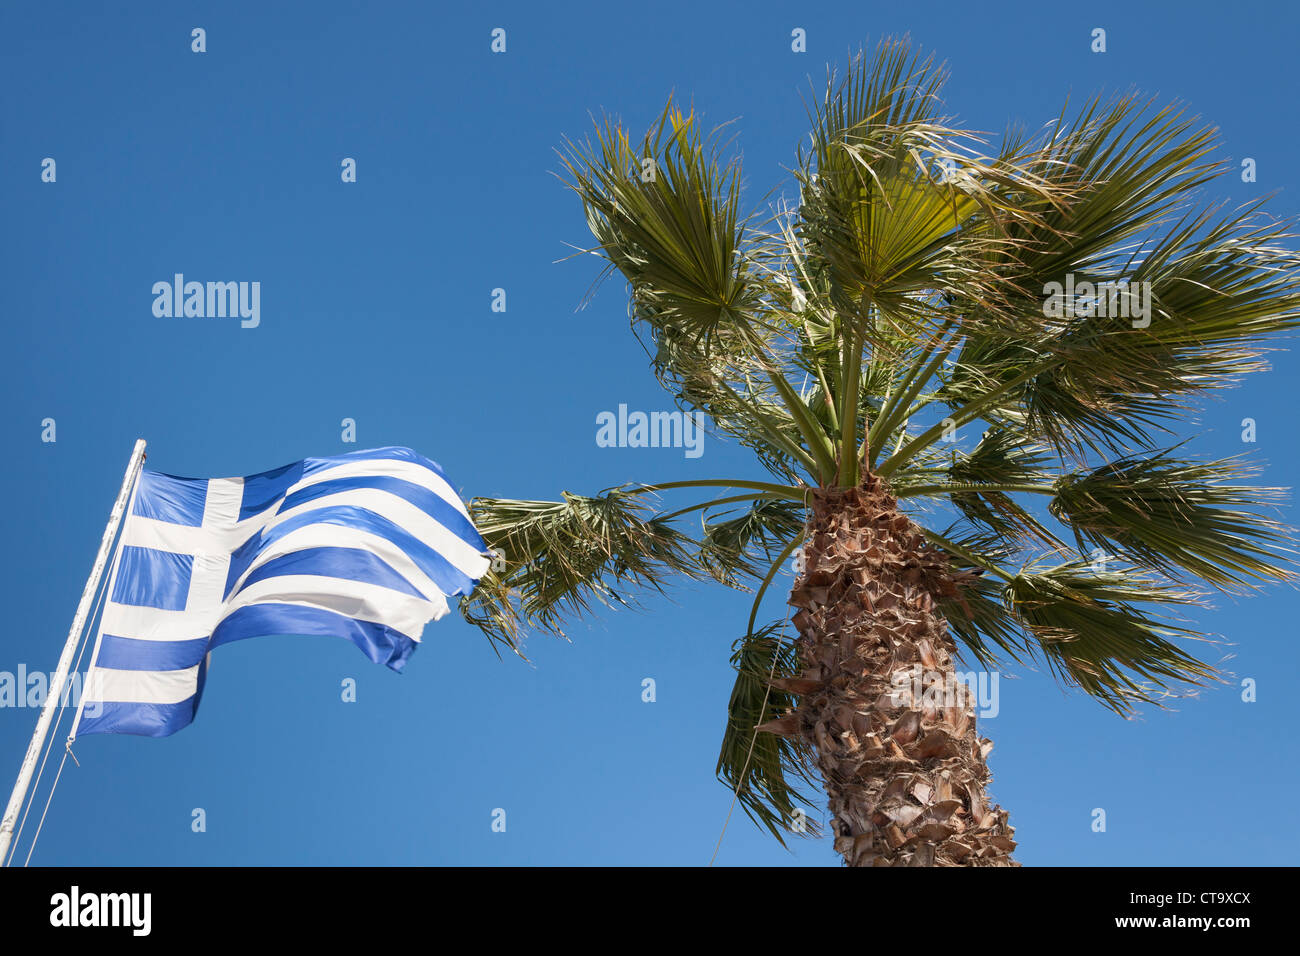 Drapeau grec et palmier, Katakolon, Grèce Banque D'Images